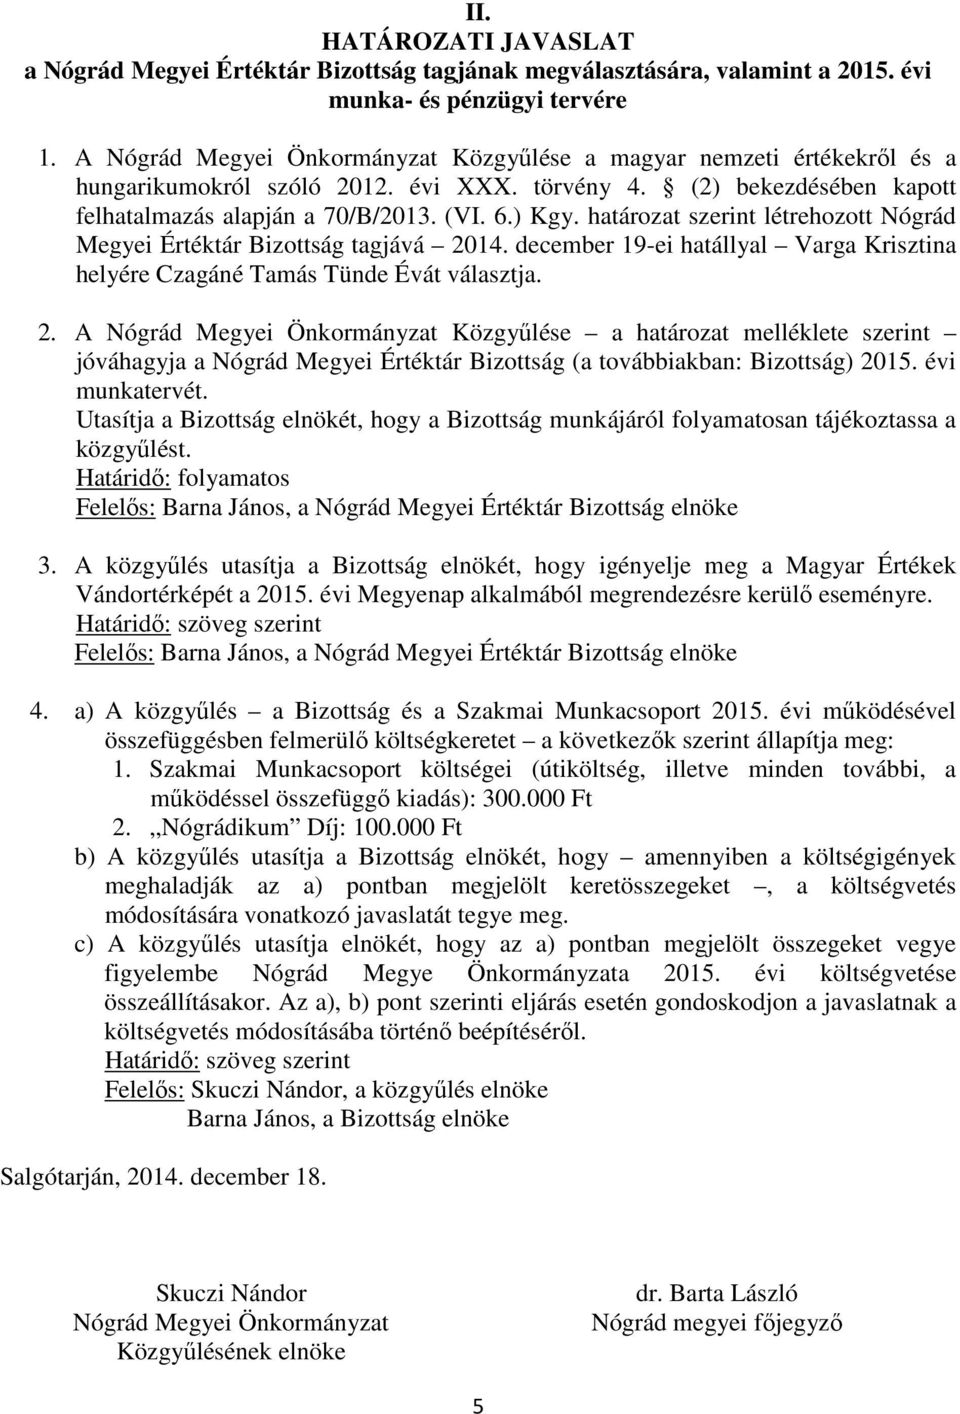 határozat szerint létrehozott Nógrád Megyei Értéktár Bizottság tagjává 20